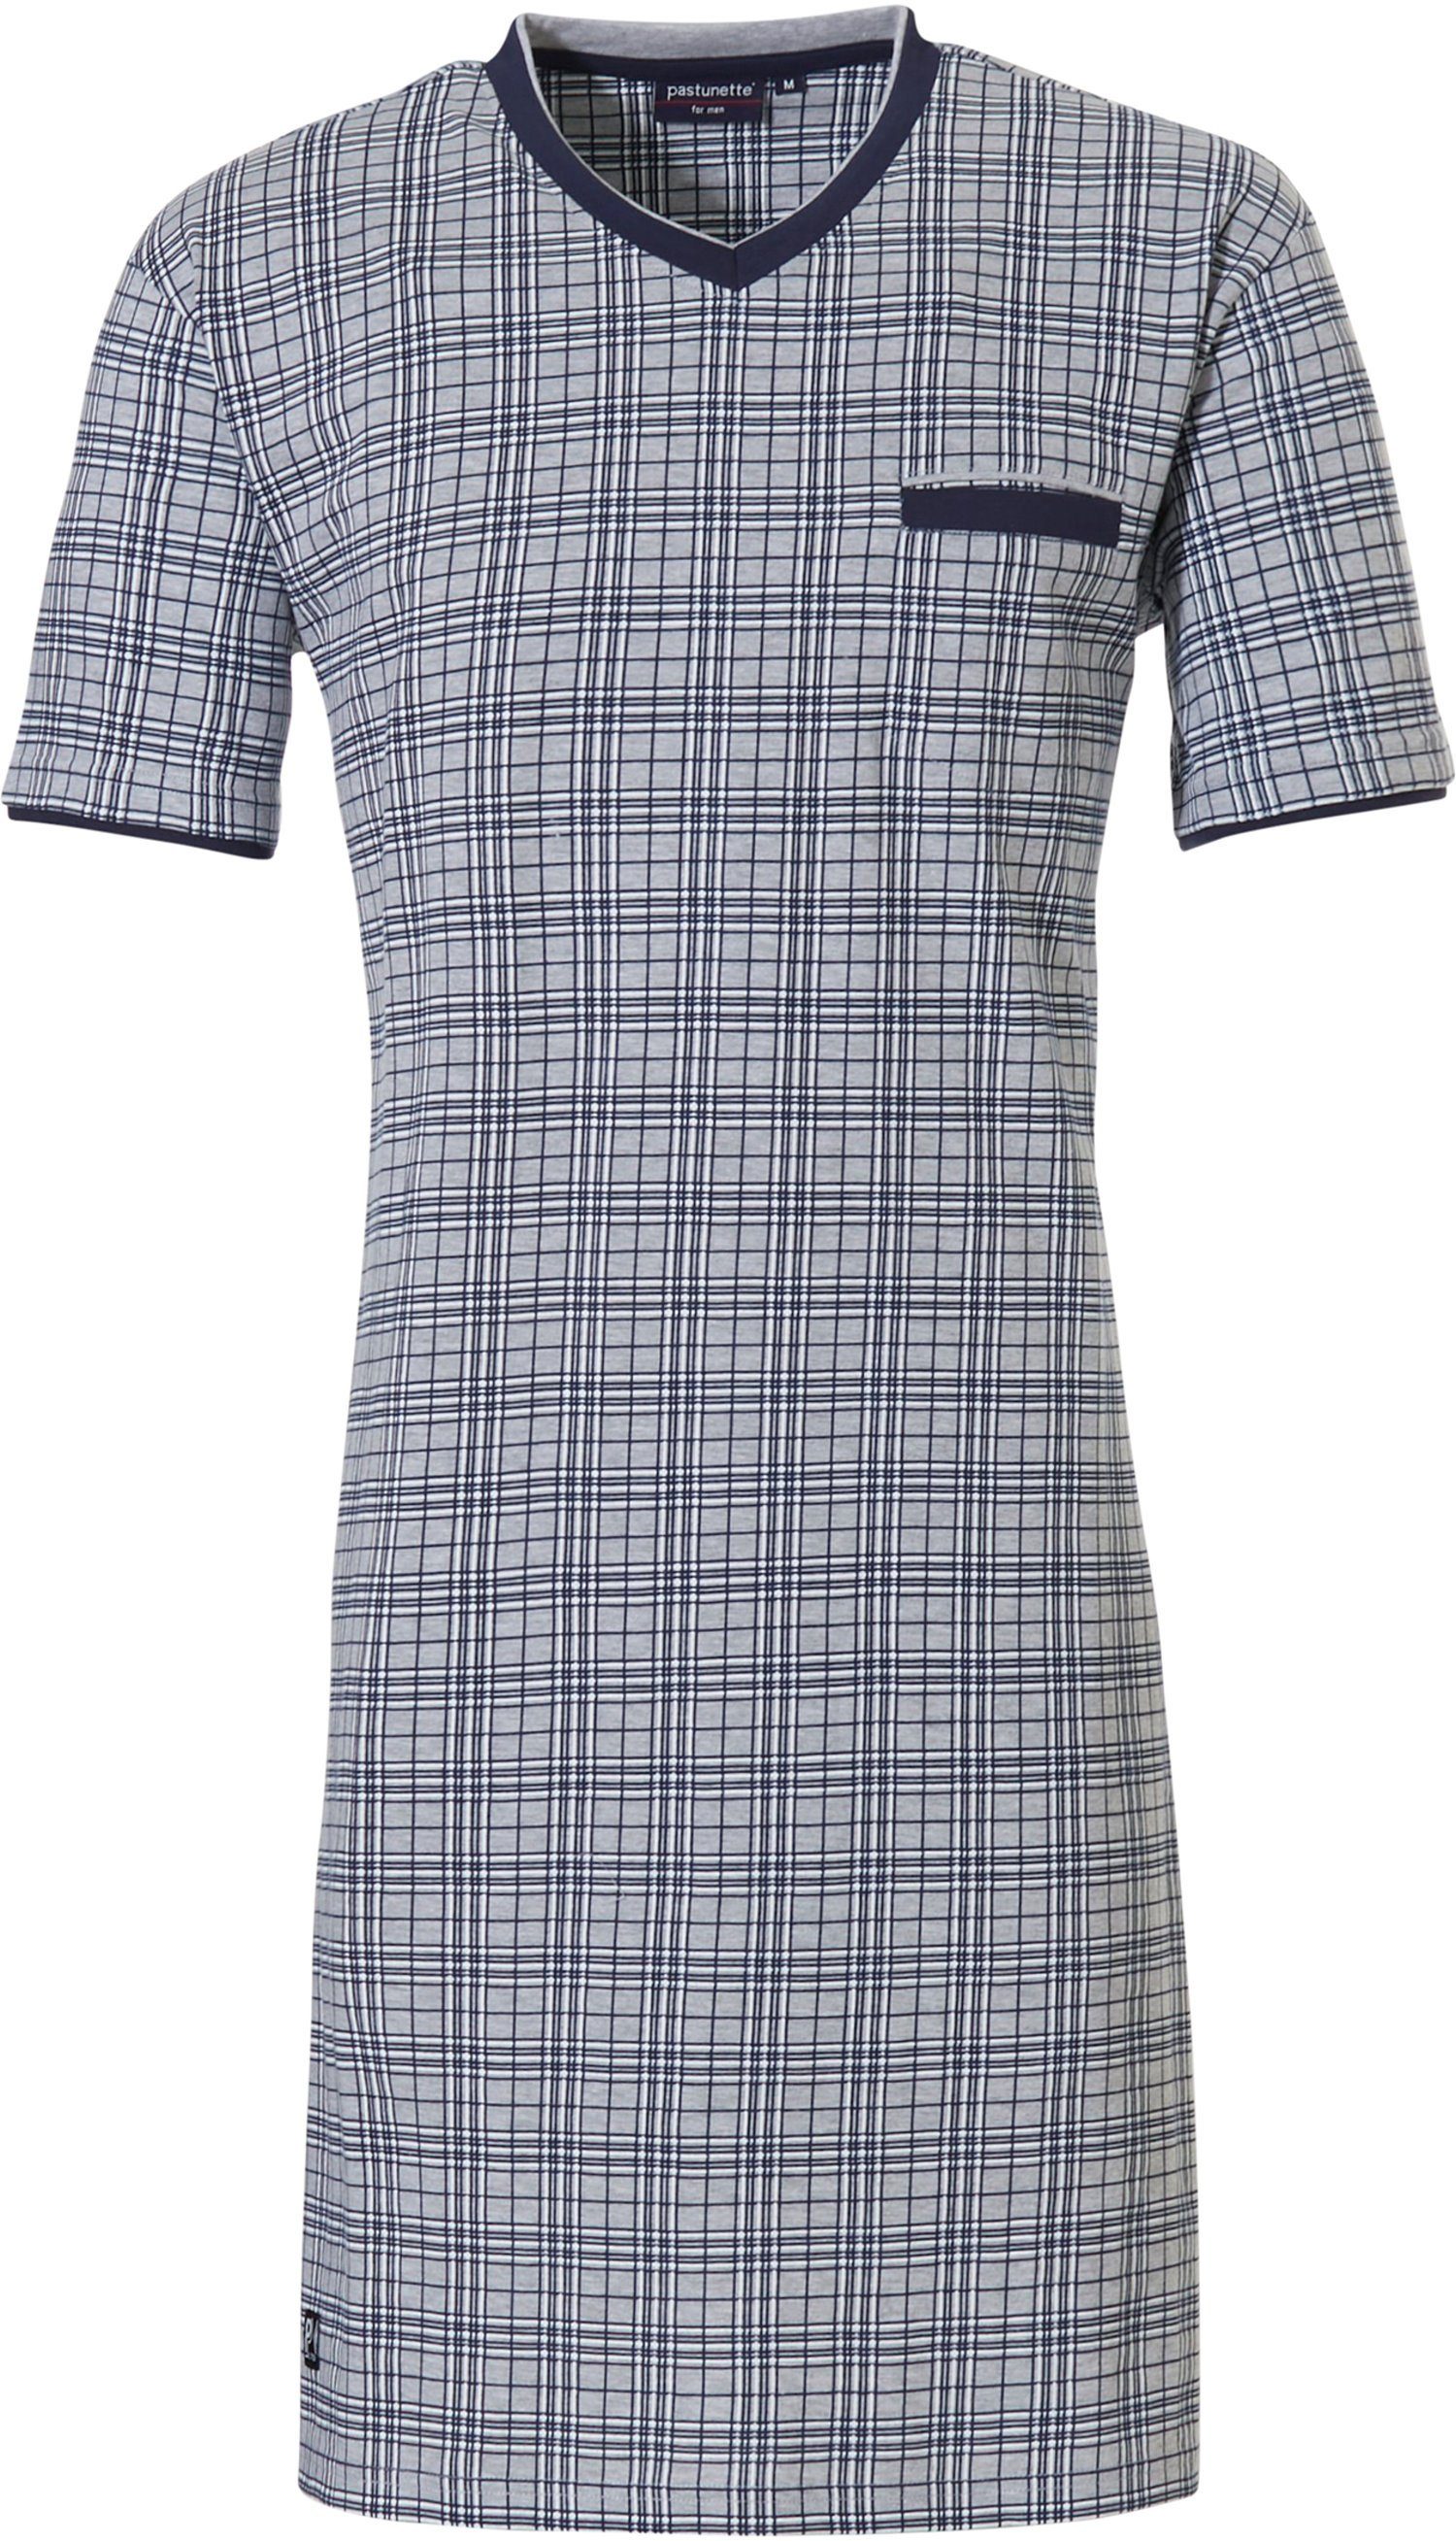 Pastunette Nachthemd Herren Nachthemd mit kurzem Arm (1-tlg) Baumwolle grey